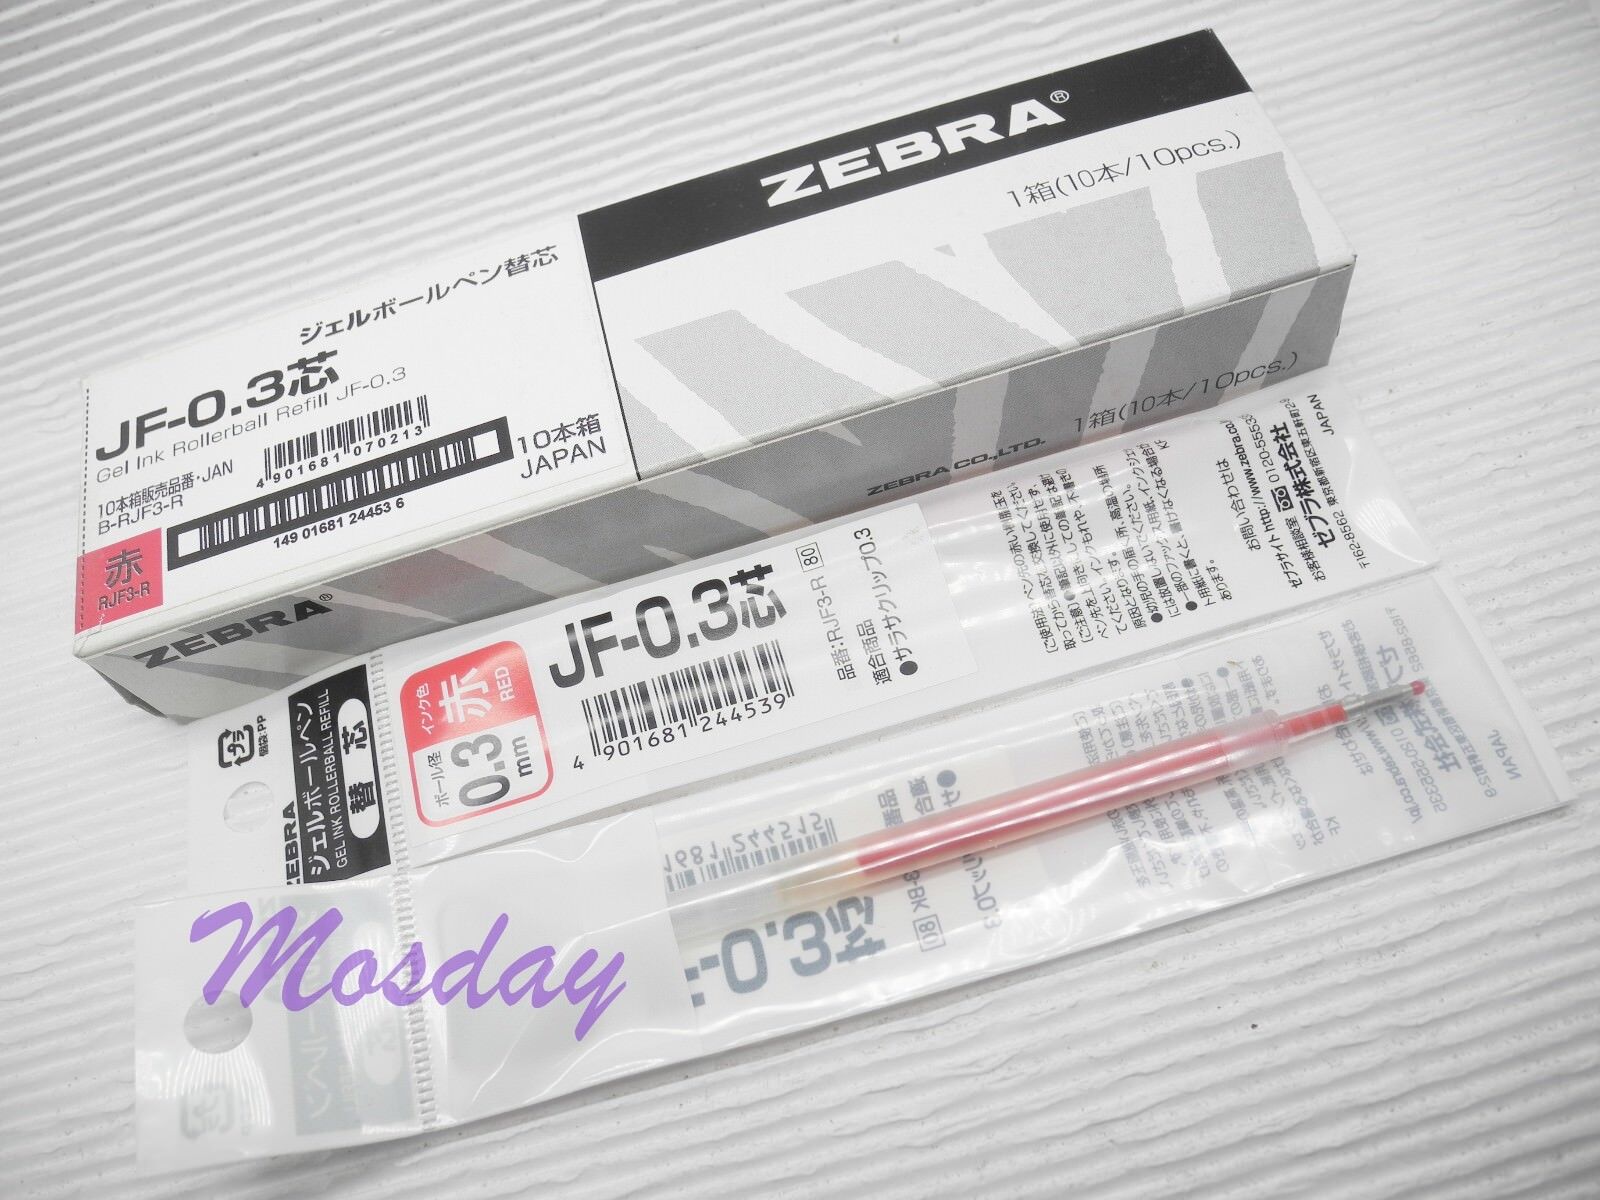 10 x Zebra SARASA Retractable RollerBall Pen Refills 0.3mm Micro Fine, RED